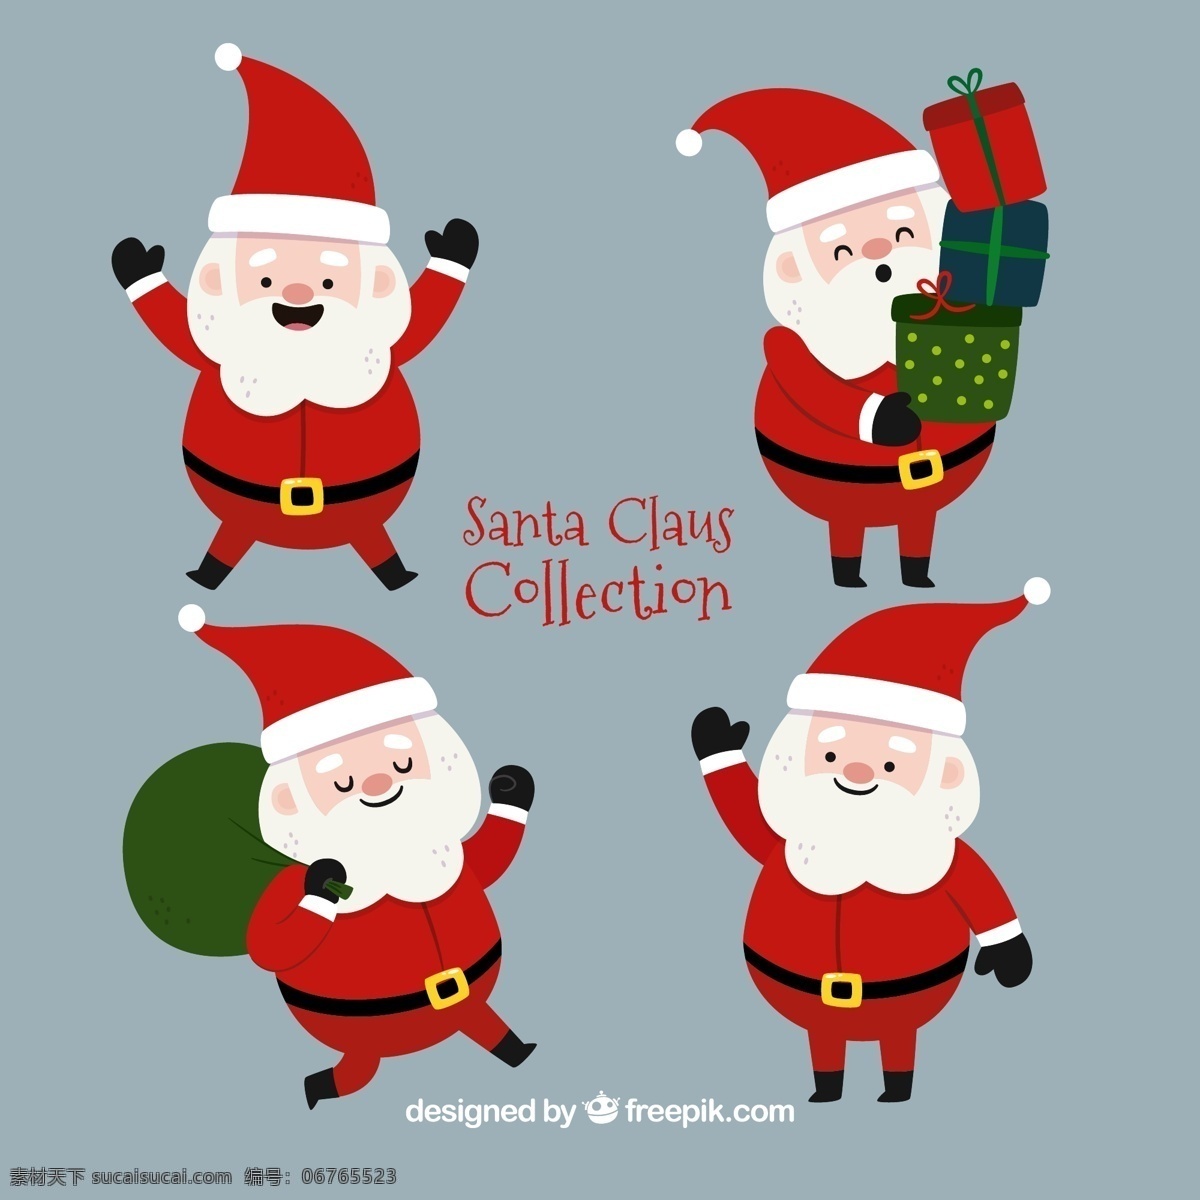 圣诞老人 卡通 圣诞 icon 圣诞树 节日 新年 线稿 手绘 插画 品牌设计 包装设计 图标设计 手绘图标 精美插画 节日礼品 卡通设计 圣诞节呦